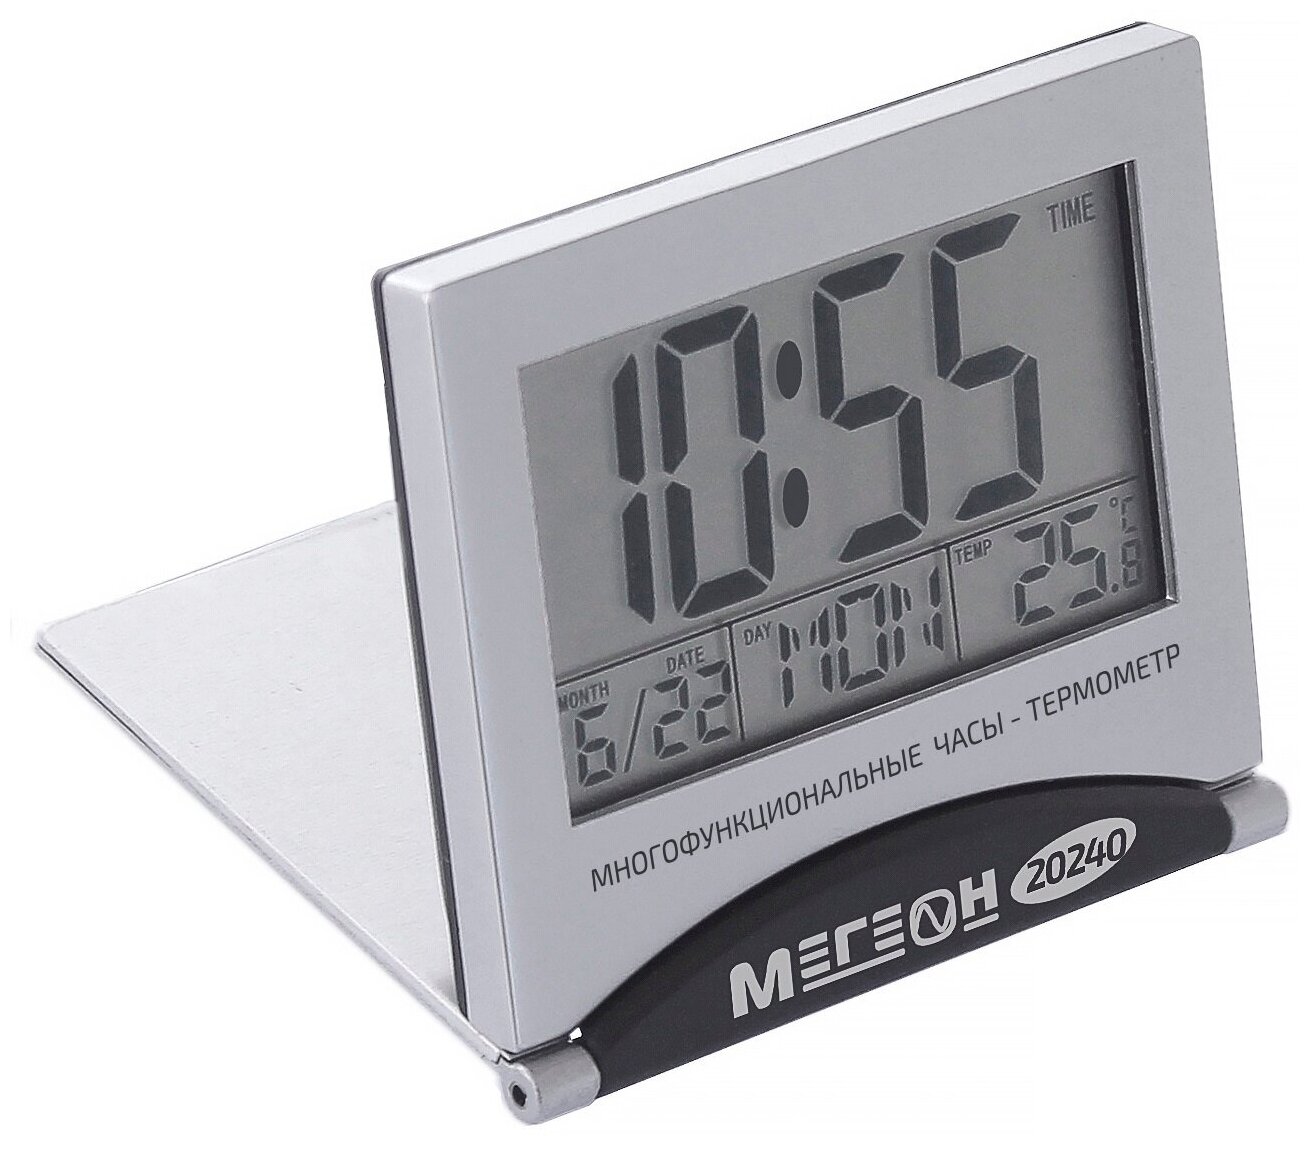 Цифровой настольный термометр мегеон 20240